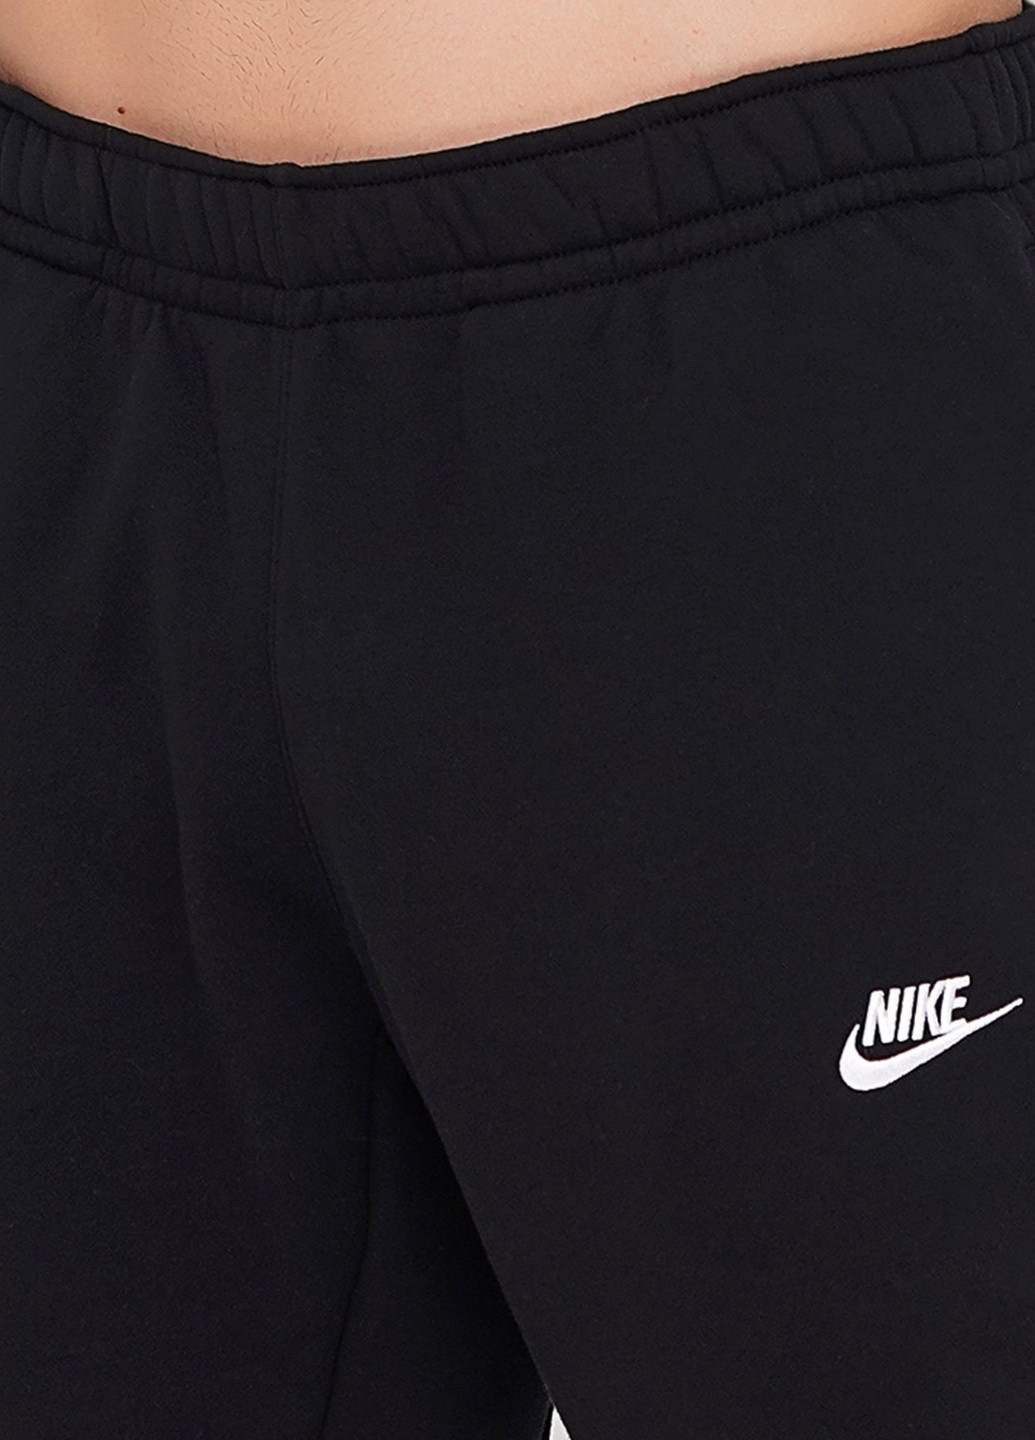 Черный демисезонный костюм (толстовка, брюки) брючный Nike